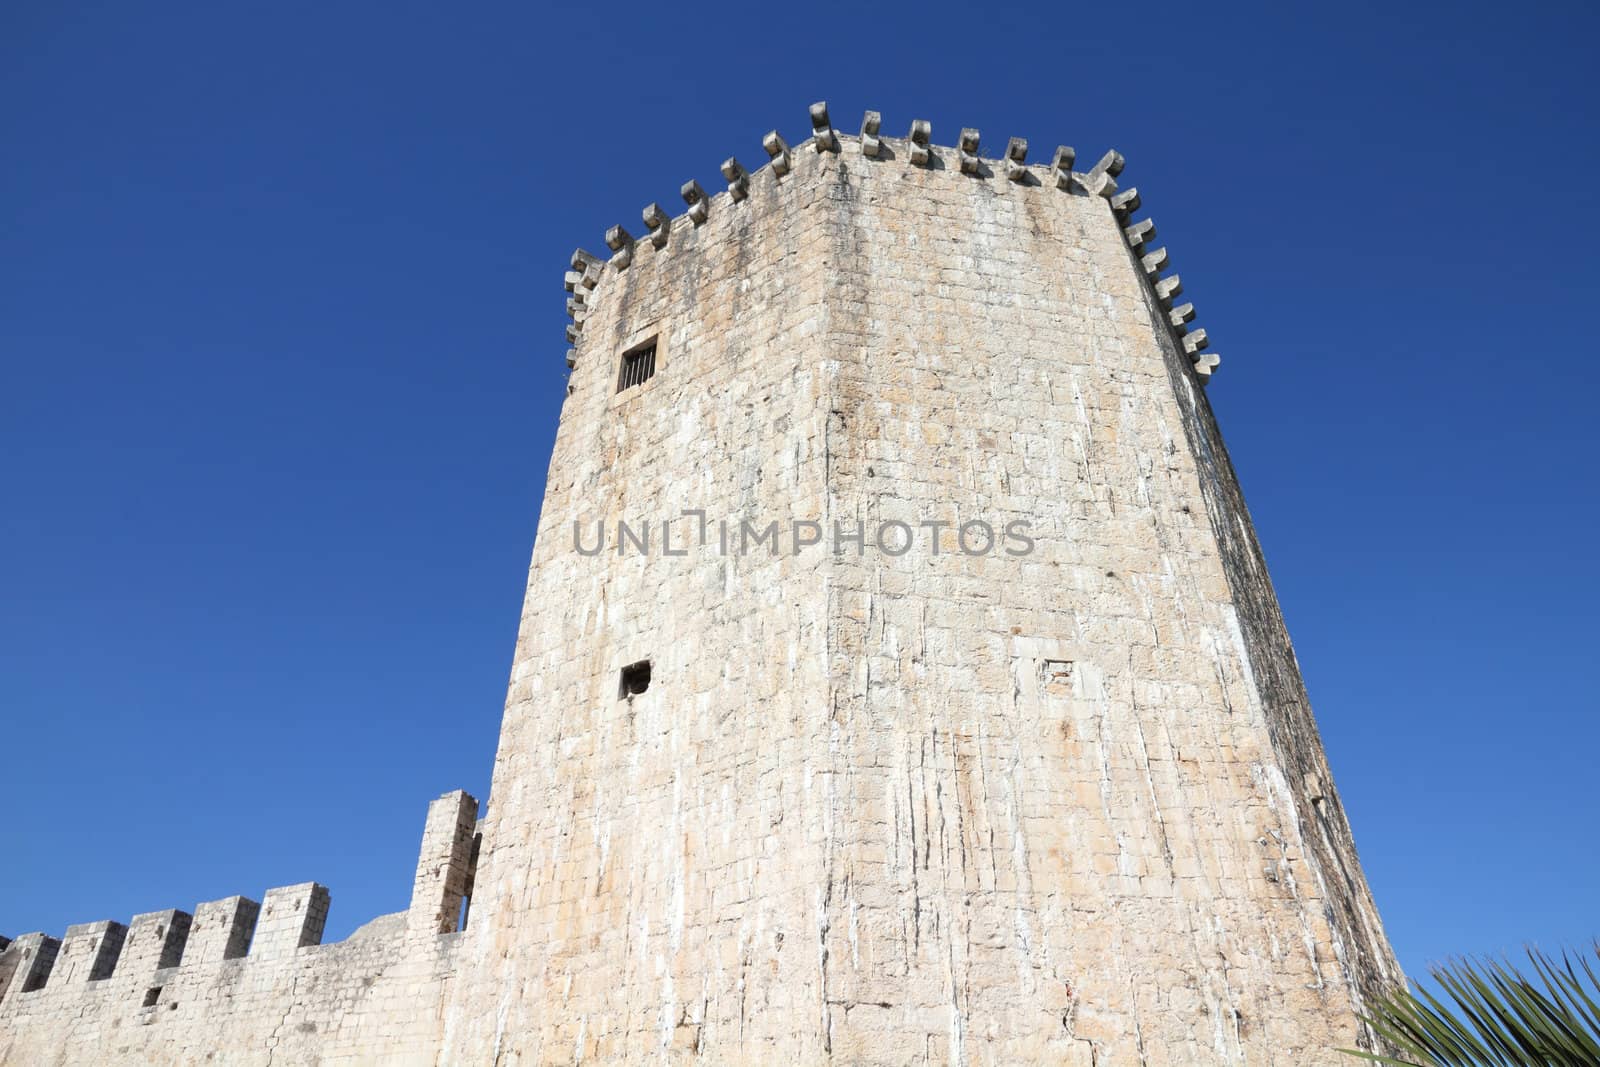 Croatia - Trogir in Dalmatia (UNESCO World Heritage Site). Kamerlengo Castle.